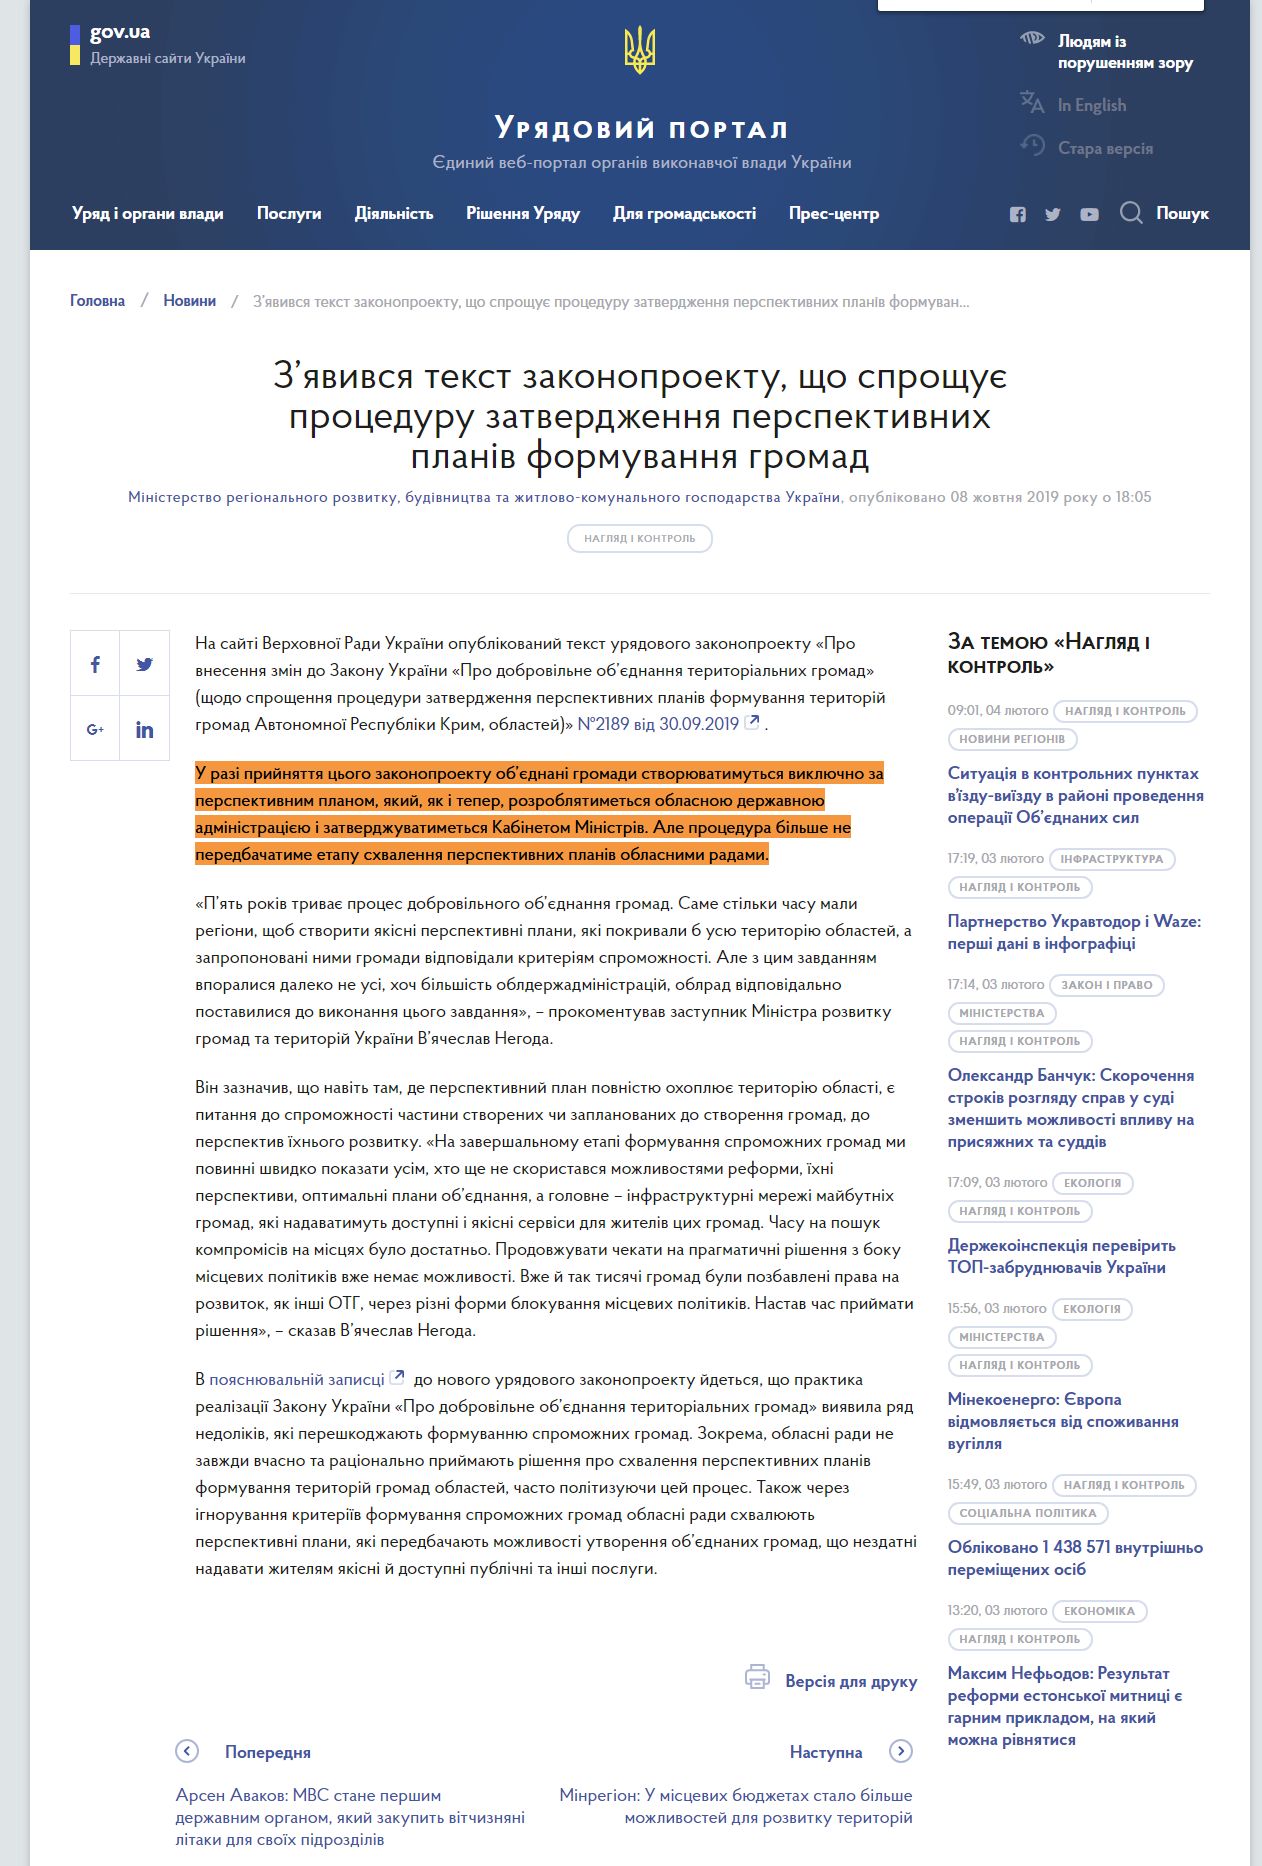 https://www.kmu.gov.ua/news/zyavivsya-tekst-zakonoproektu-shcho-sproshchuye-proceduru-zatverdzhennya-perspektivnih-planiv-formuvannya-gromad